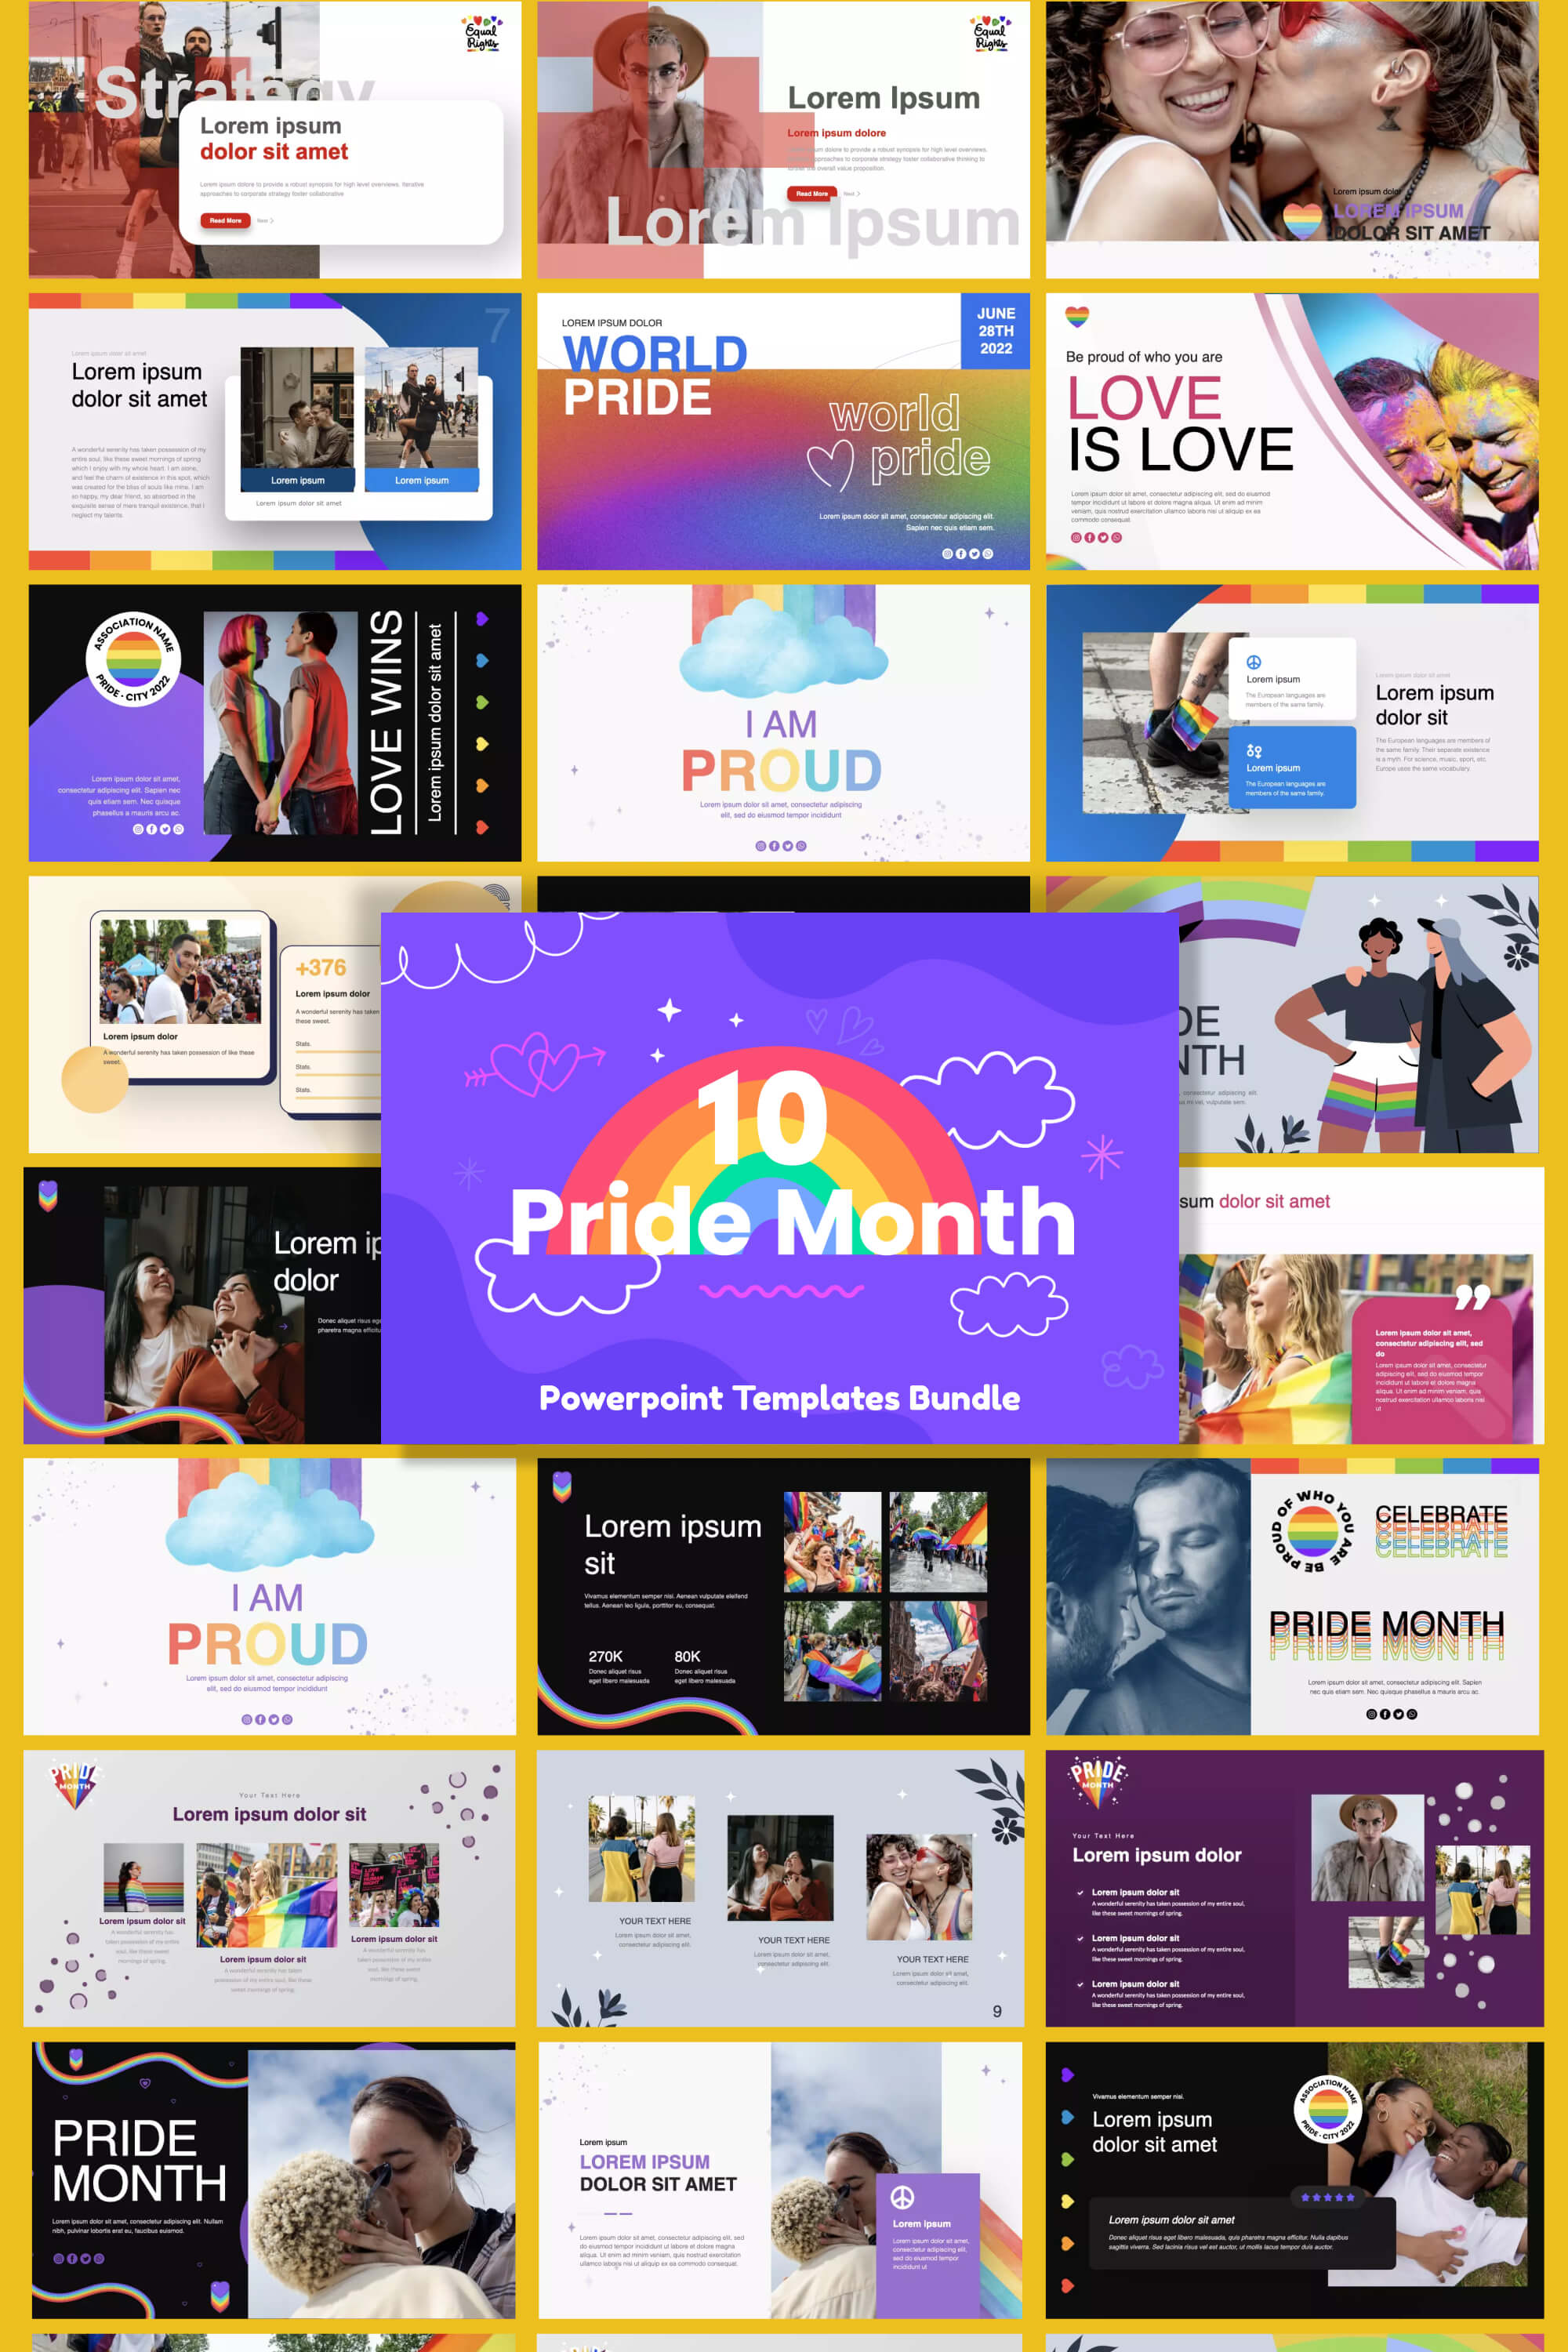 10 pride month powerpoint templates bundle pinterest